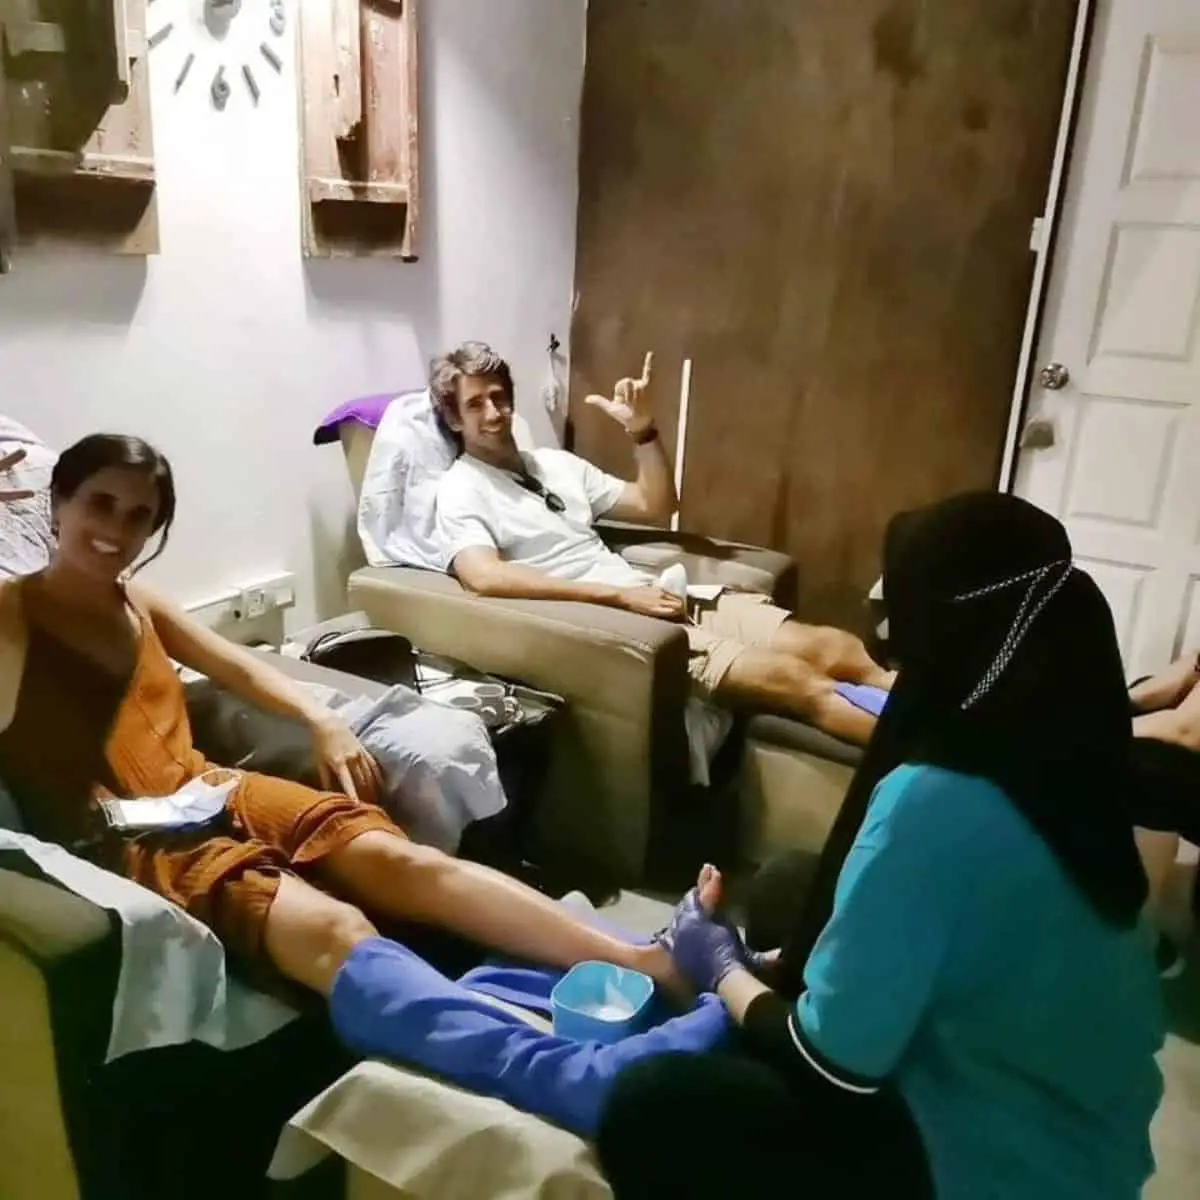 Pinang Spa House no frills foot massage